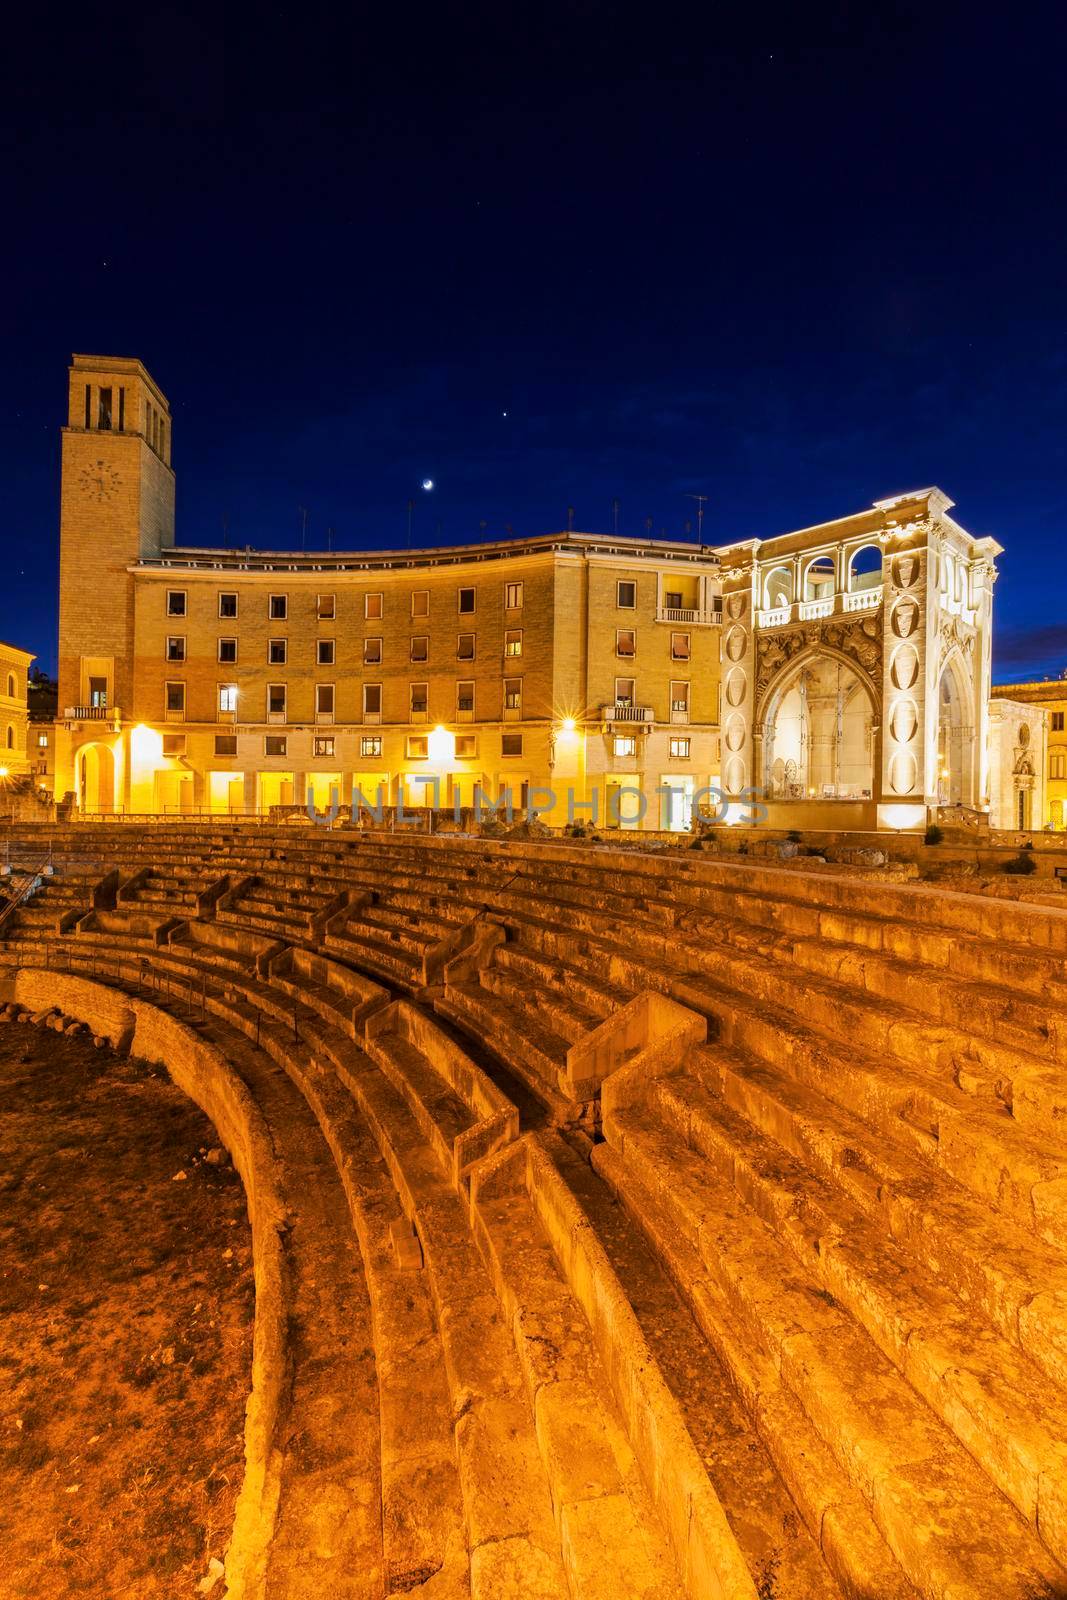 Piazza Santo Oronzo and Anfiteatro Romano in Lecce. Lecce, Apulia, Italy